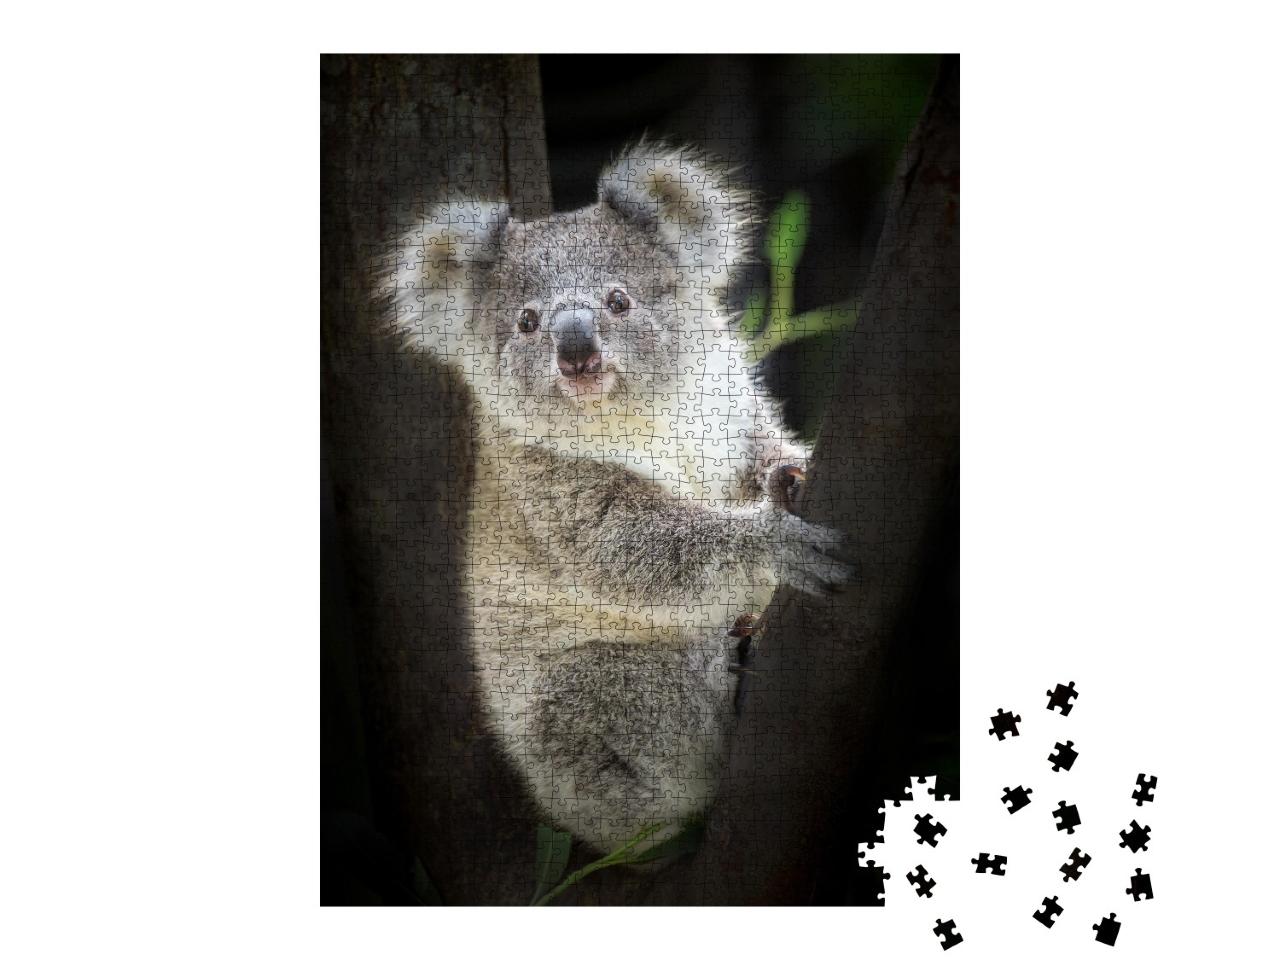 Puzzle de 1000 pièces « Koala au zoo »